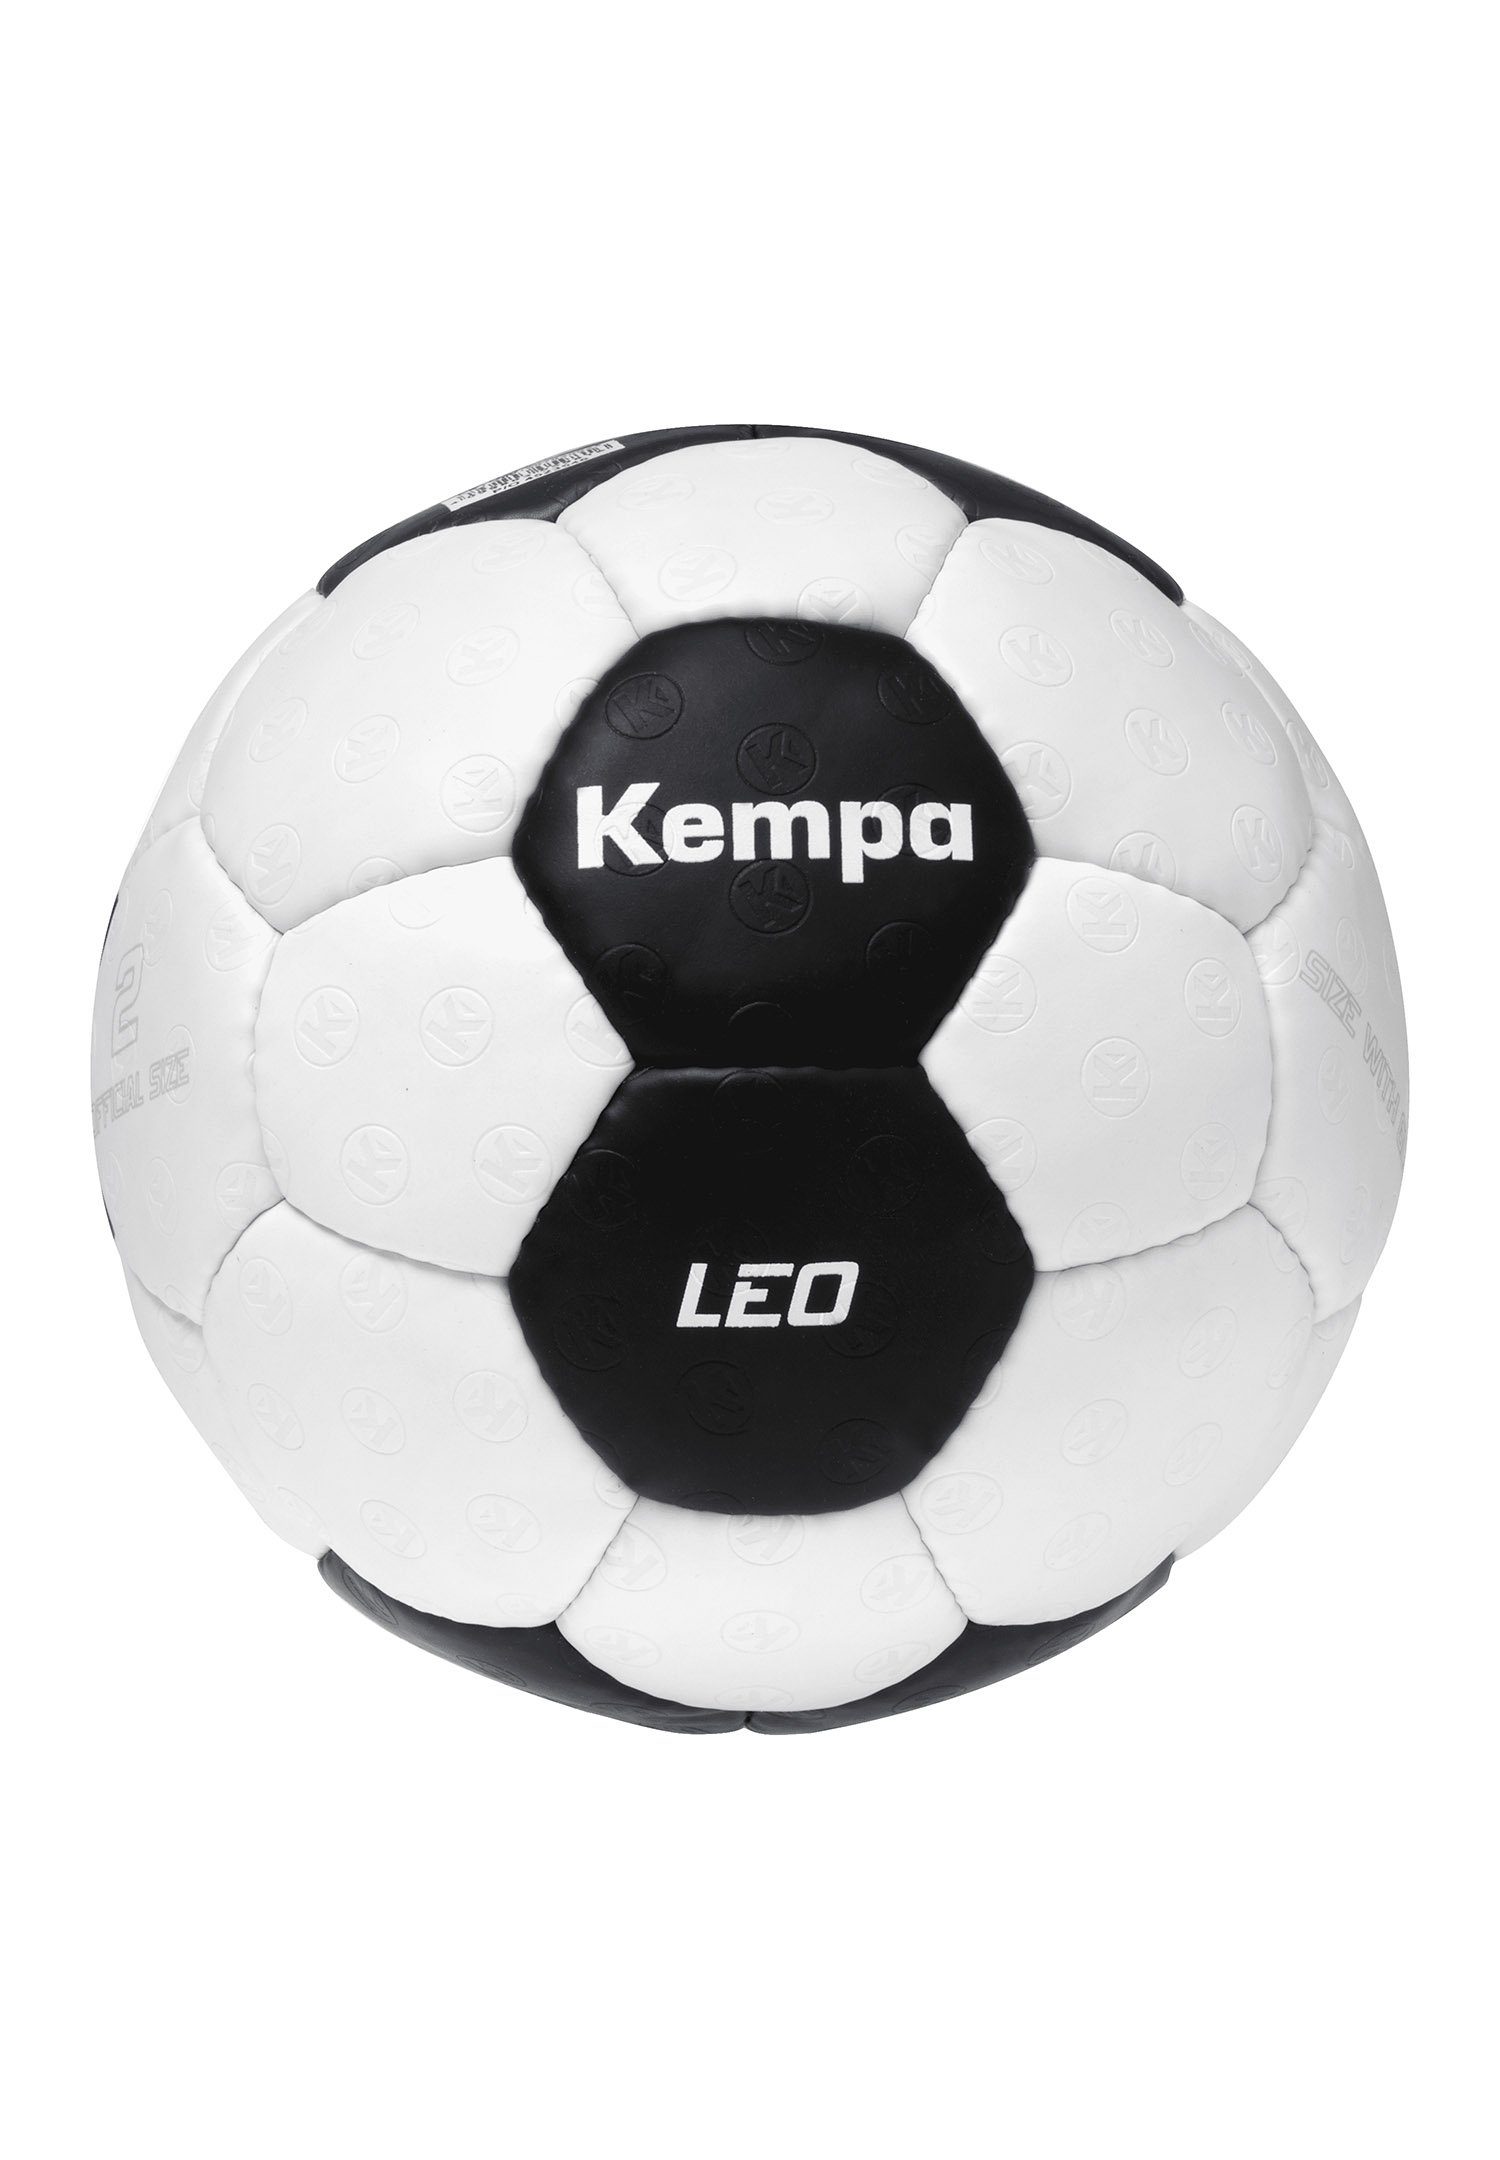 Fußball Changer Game Kempa Leo